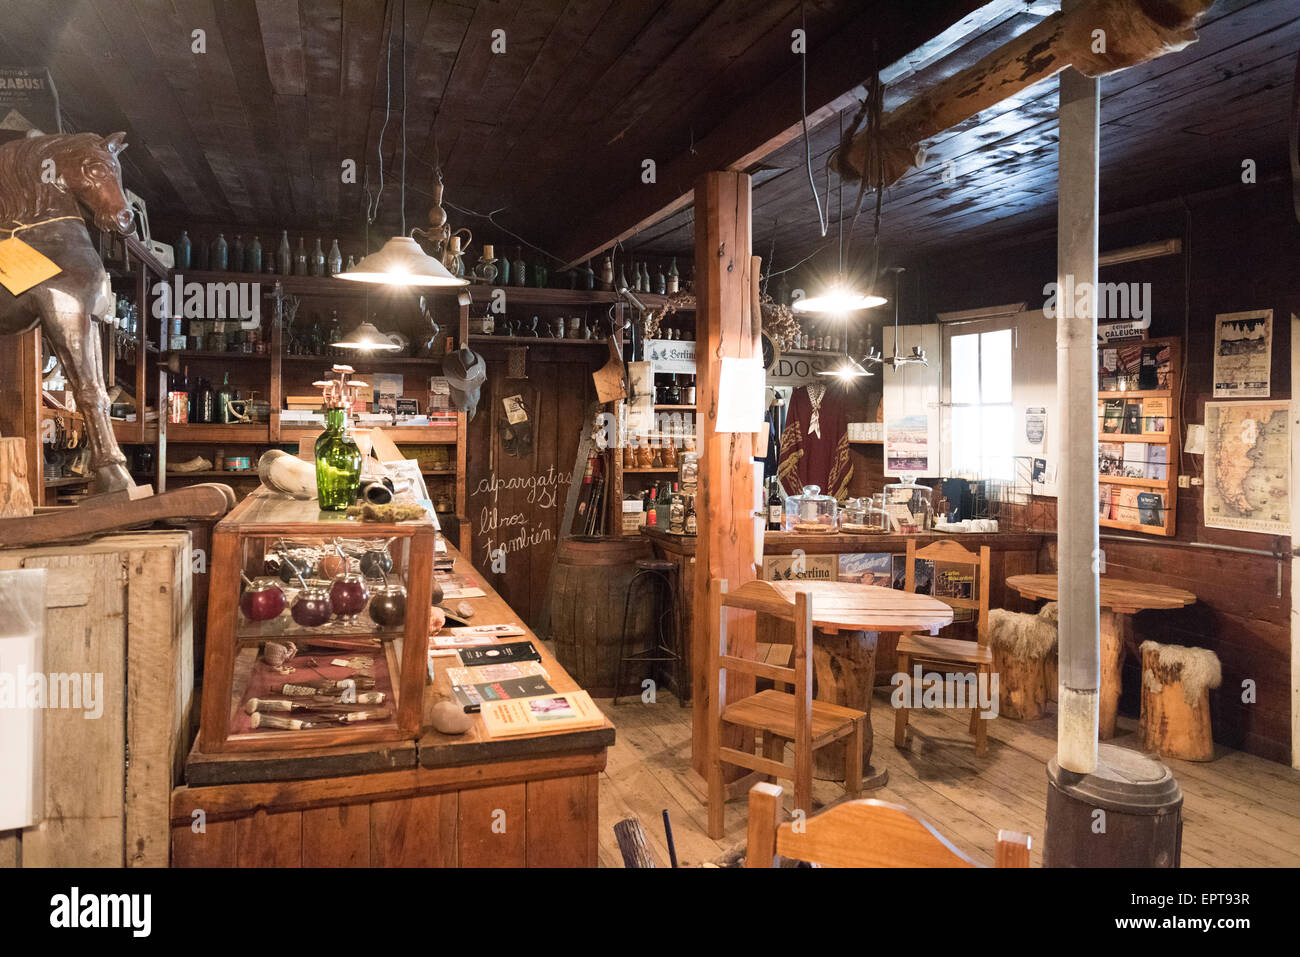 El Viejo Almacen del Foyel - Restaurant und Museum der Mapuche Leben - auf La Ruta 40 in der Nähe von El Bolson, Provinz Neuquen, Argentinien Stockfoto